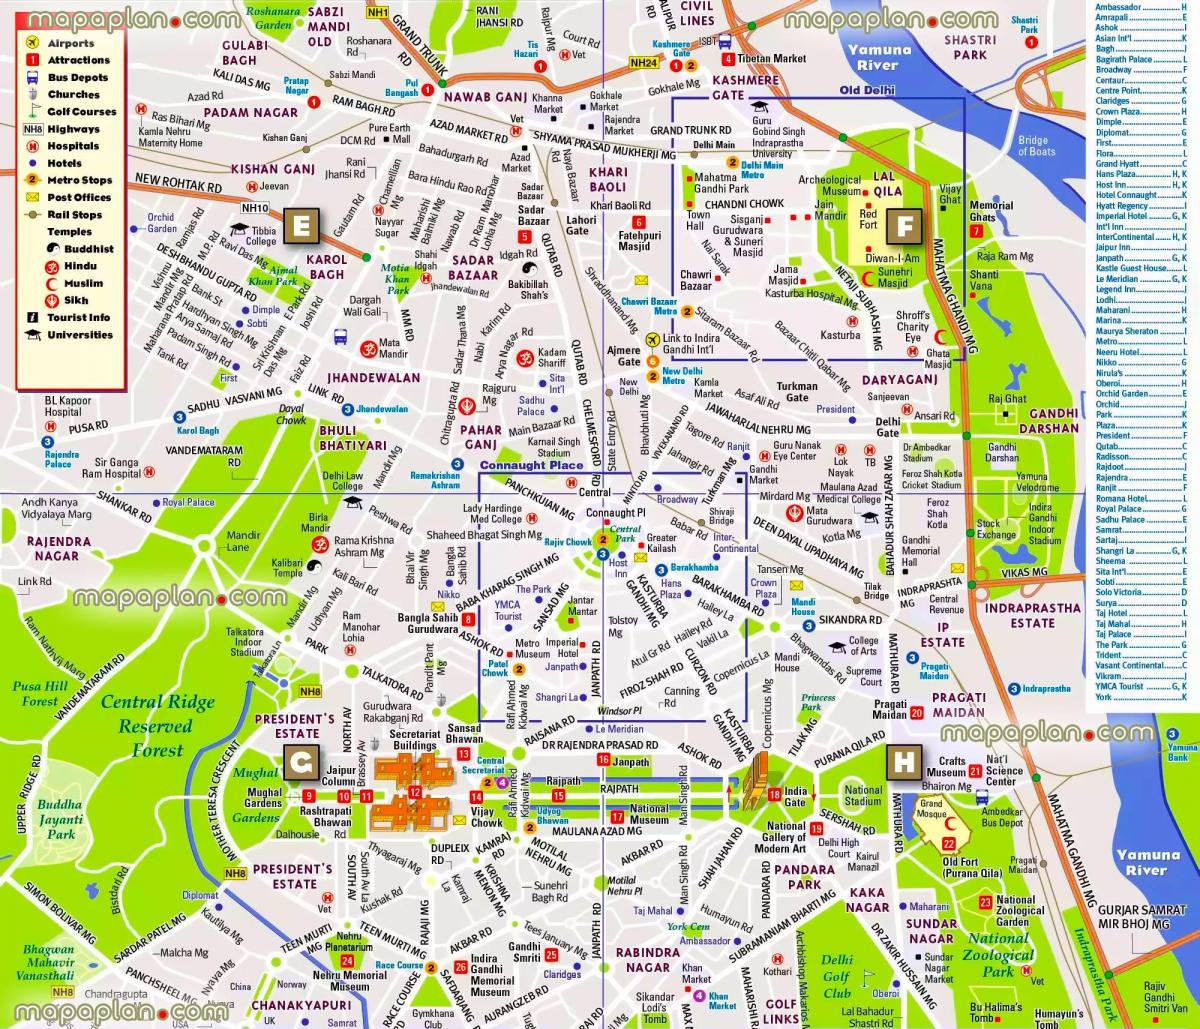 Mappa del centro di Nuova Delhi